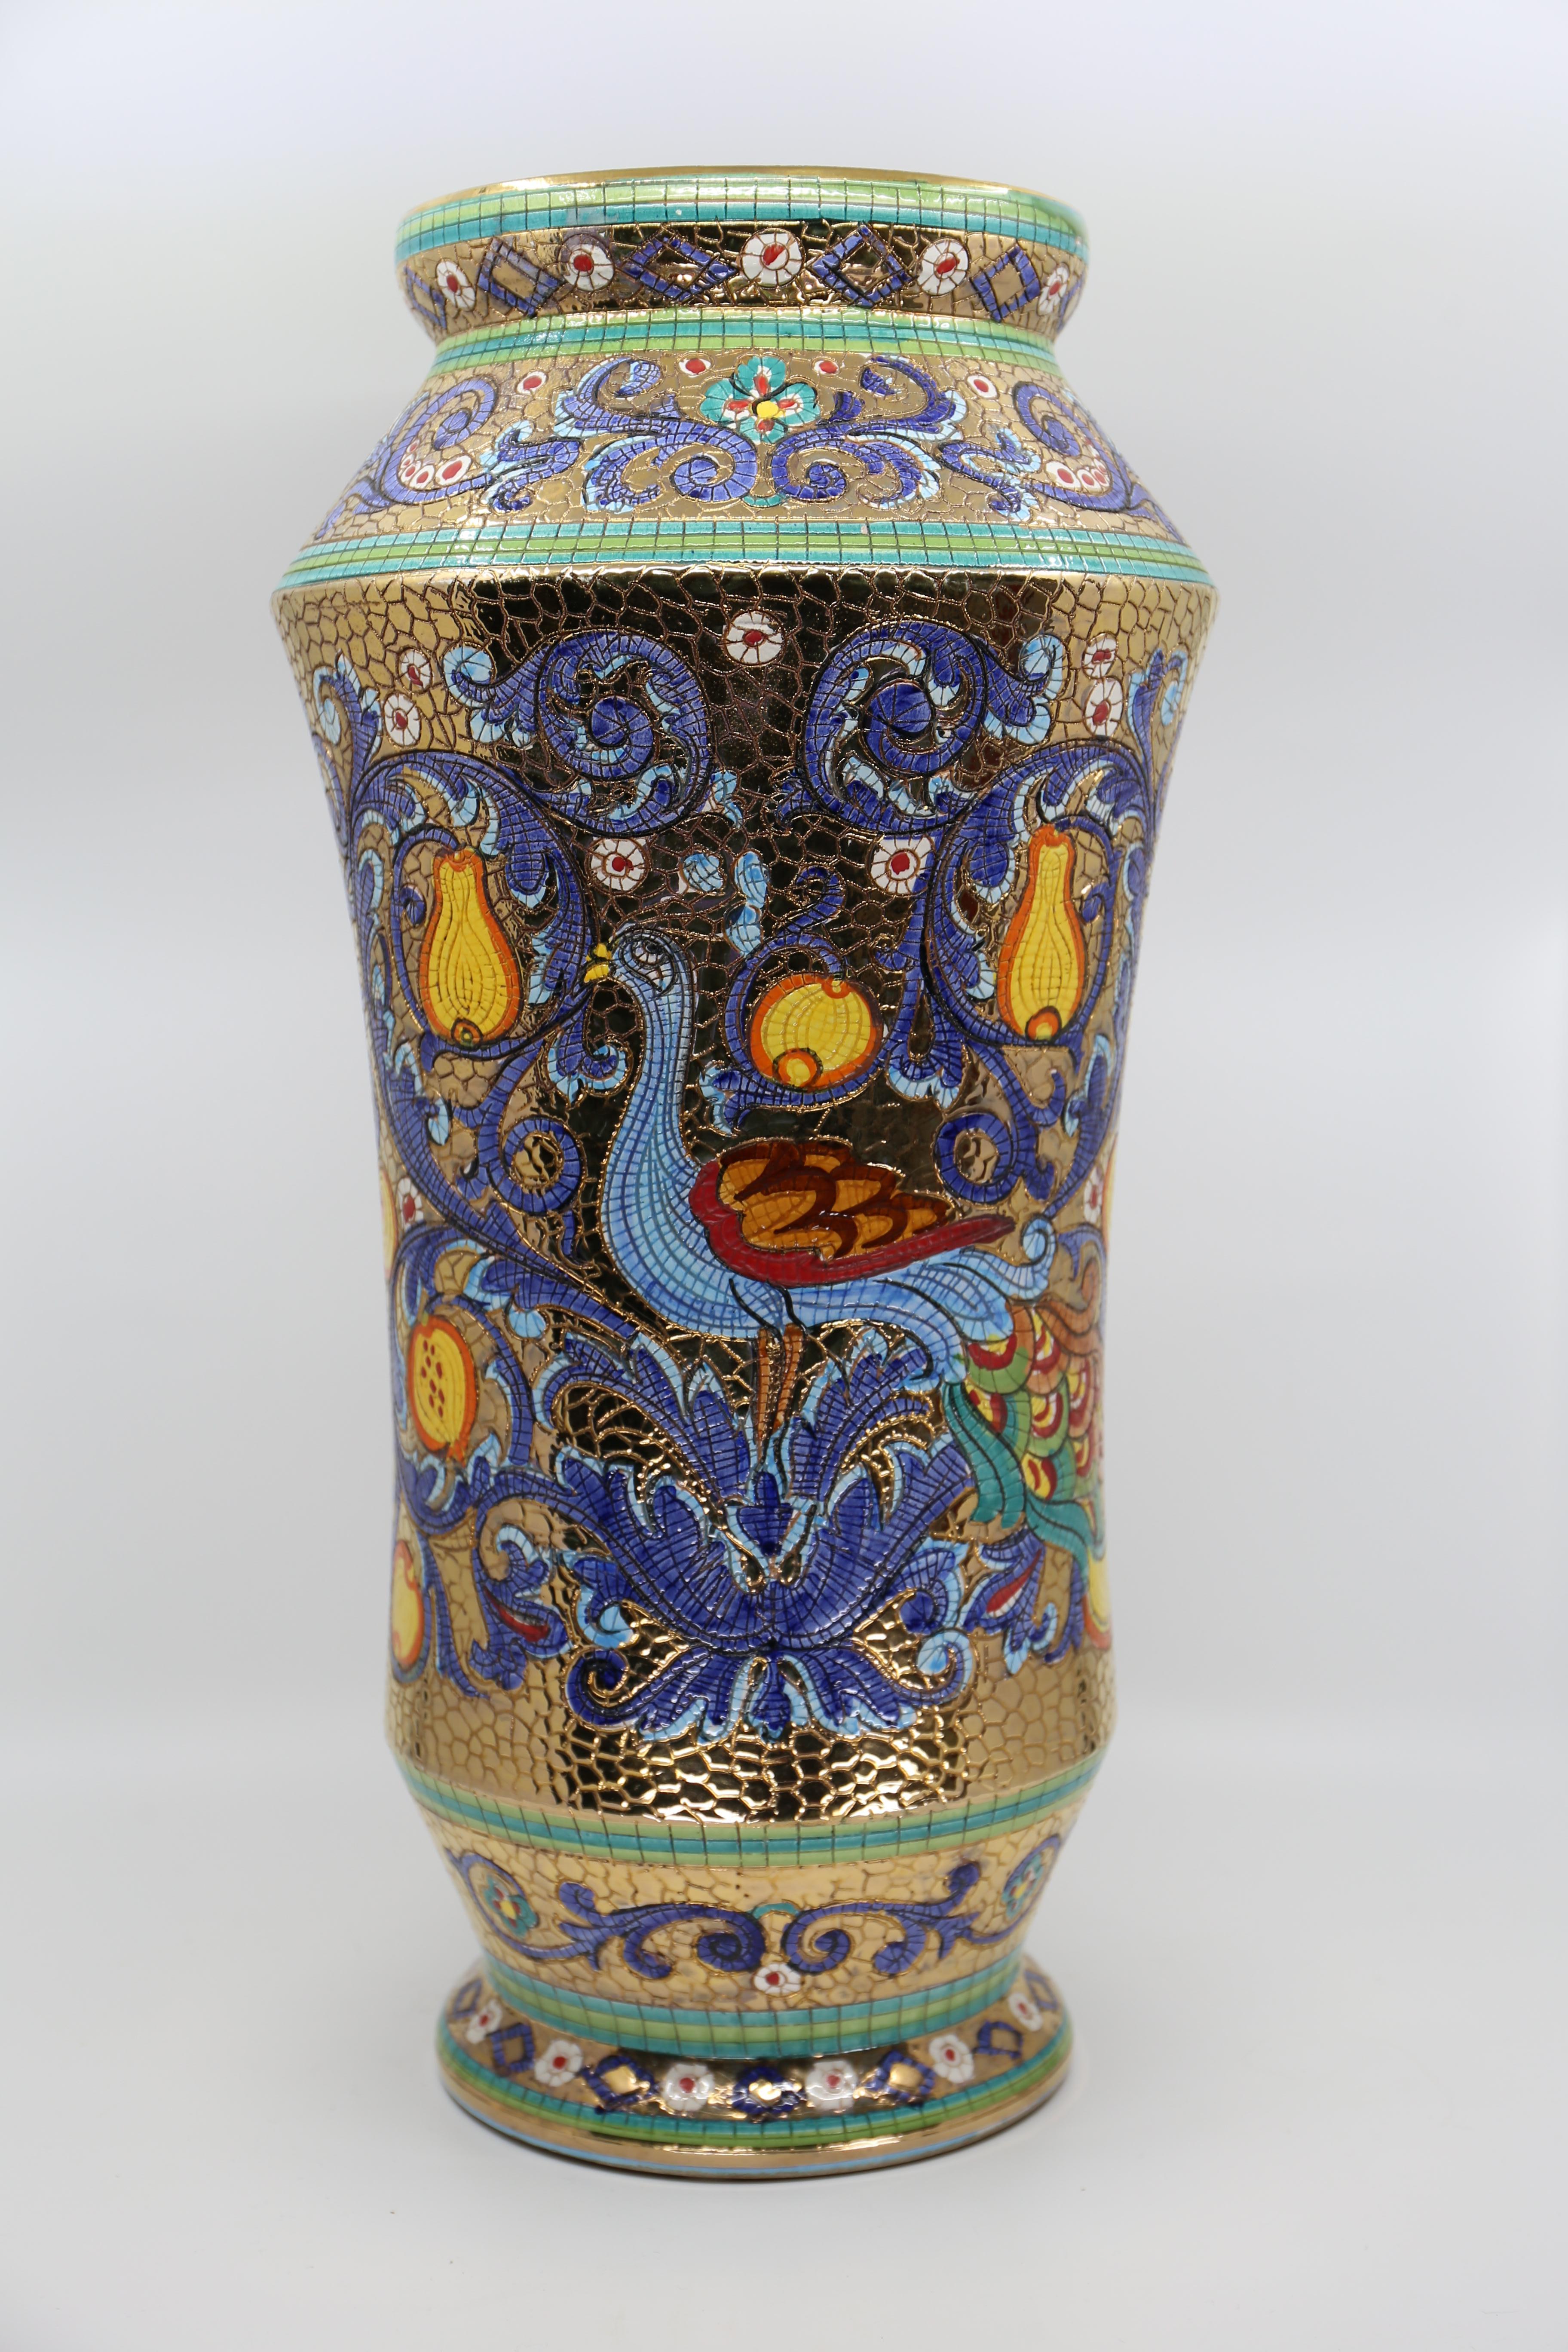 Große Mosaikvase aus Majolika, von Hand mit reinem Blattgold verziert.

Italienische Vintage Deruta Mosaik Vase, das Design ist eine Darstellung der Kaiserin Theodora, der byzantinischen Frau des Kaisers Justinian aus dem sechsten Jahrhundert, die